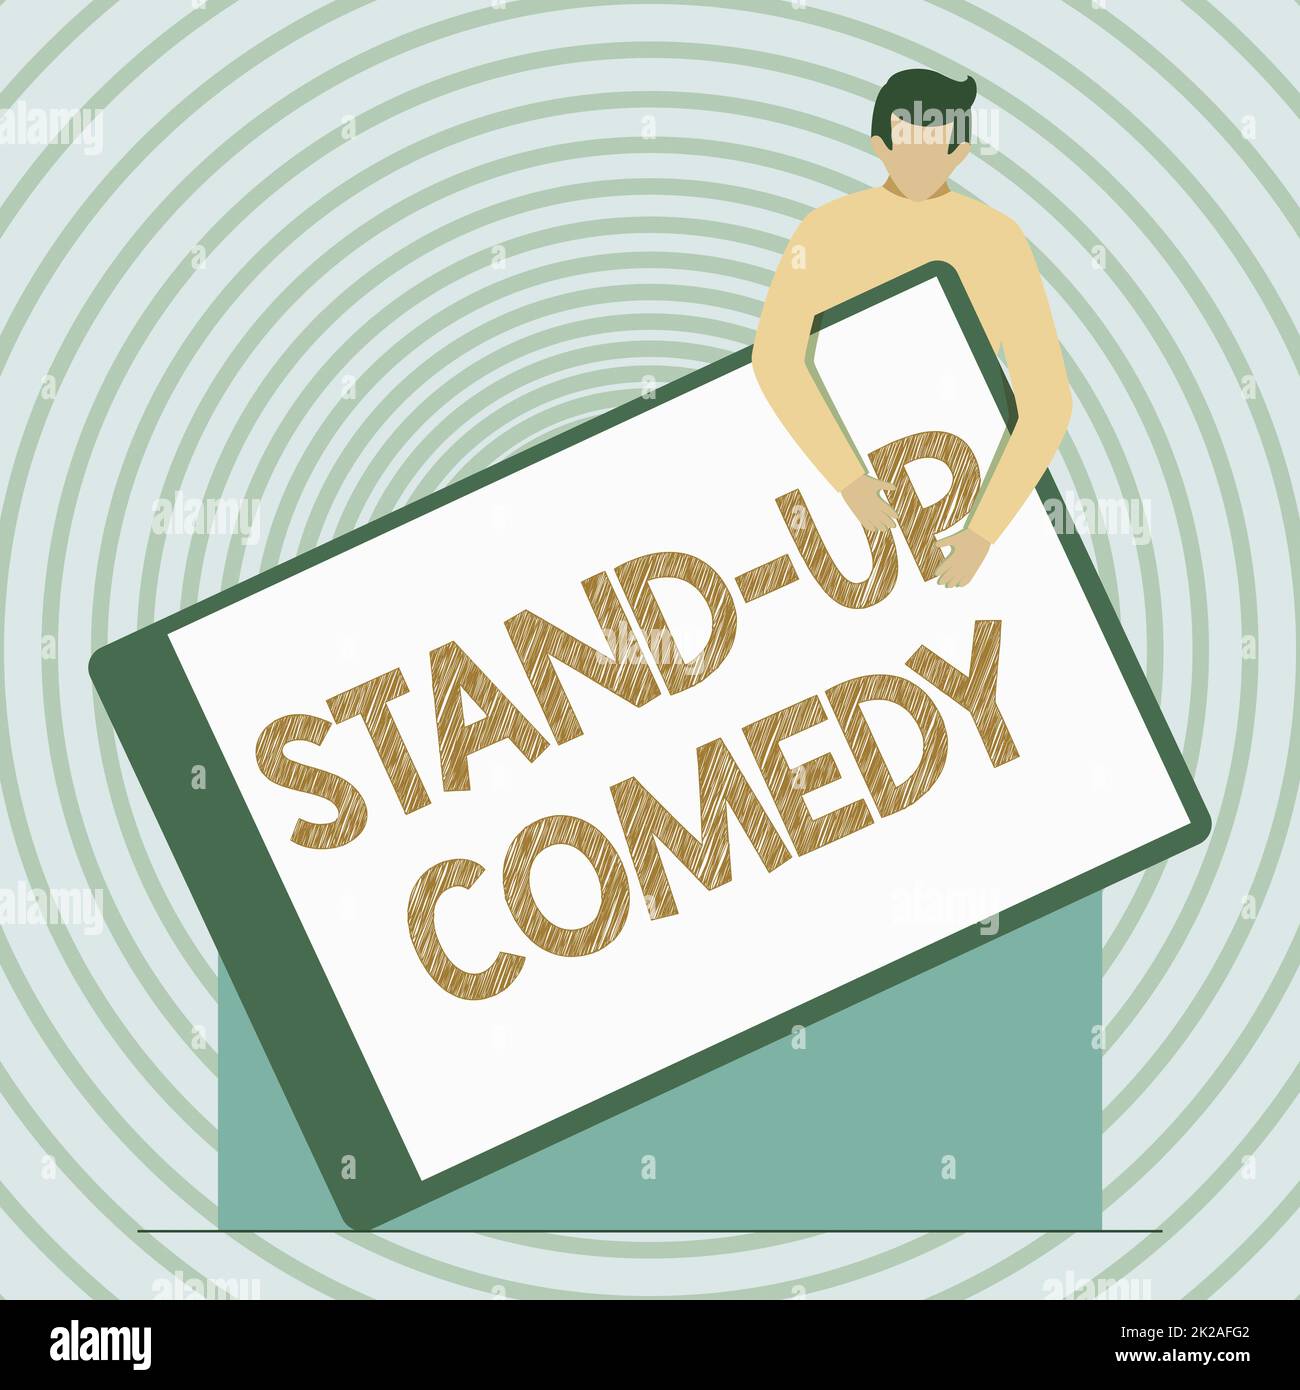 Konzeptionelle Darstellung Stand-Up-Comedy. Konzept bedeutet Comedian, der vor dem Live-Publikum spricht Gentleman Drawing mit einer riesigen leeren Zwischenablage. Stockfoto